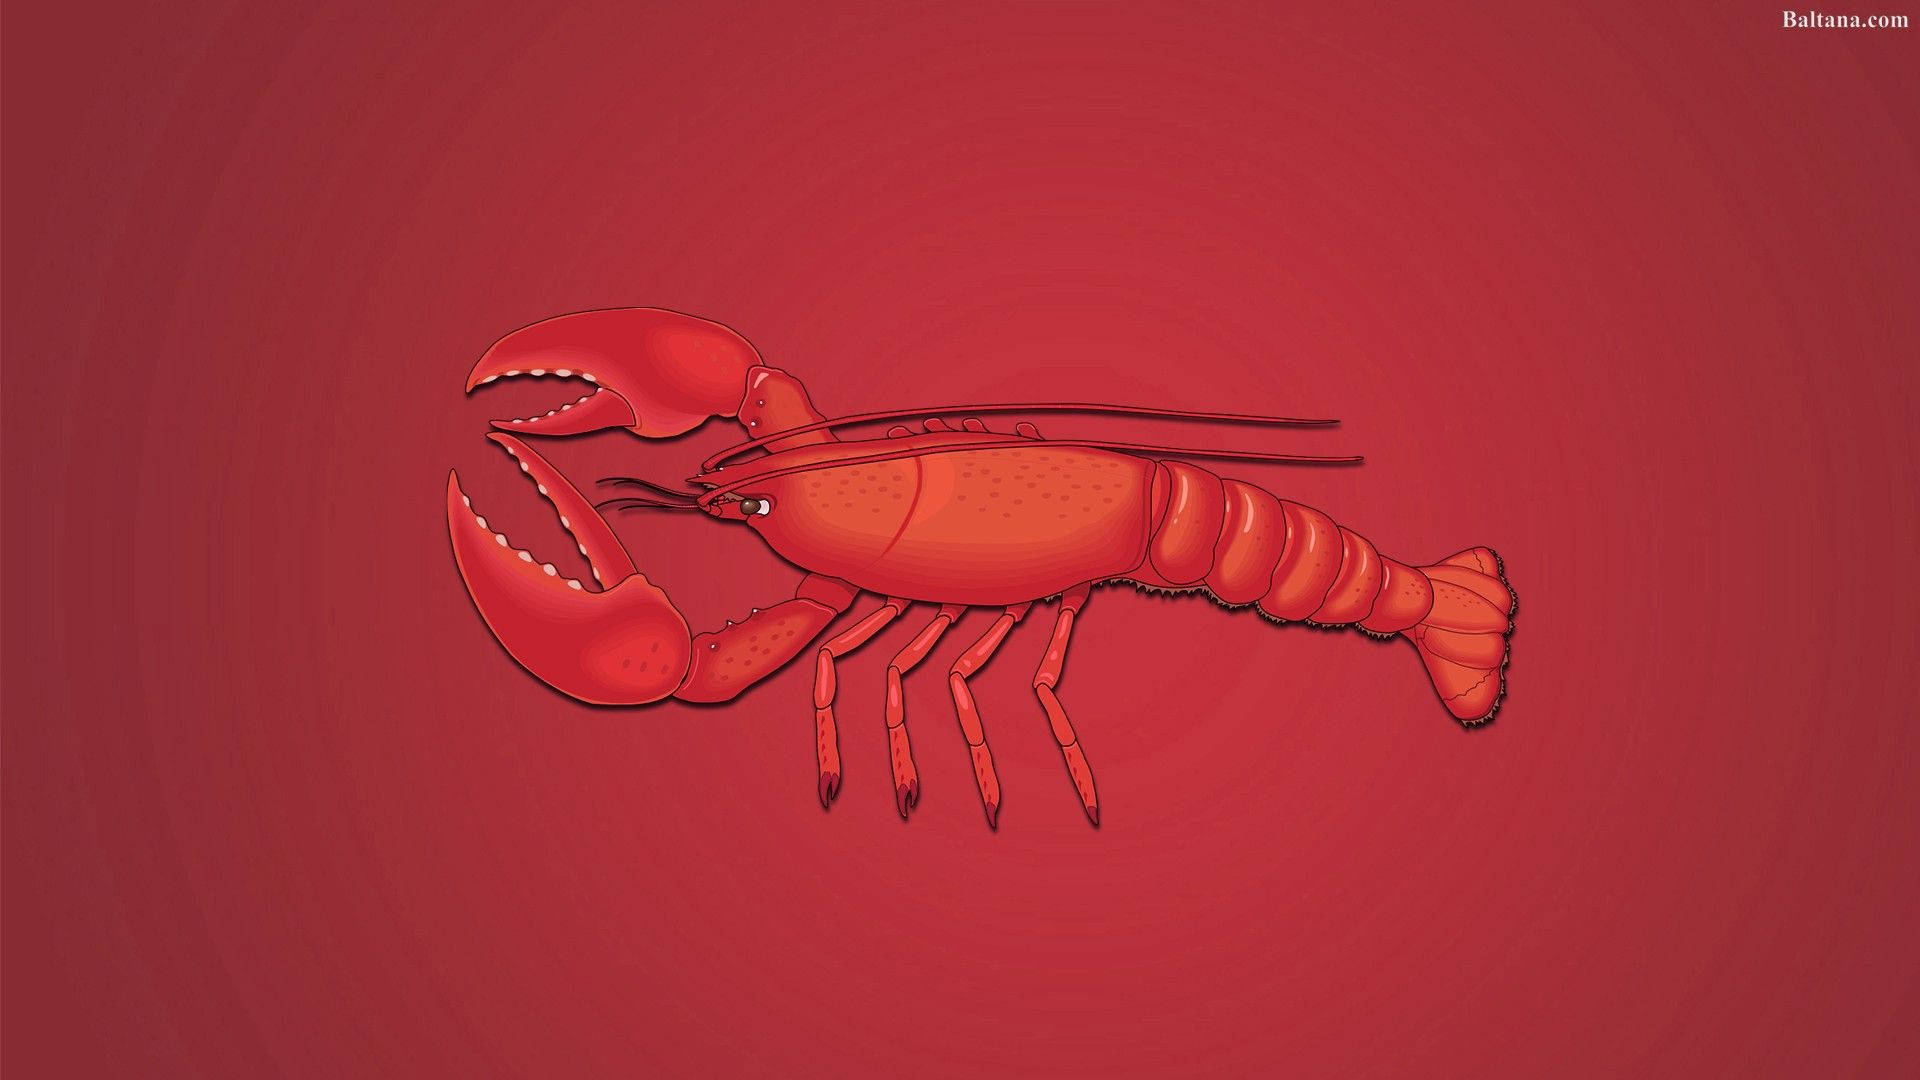 Red Lobster Illustration Wallpaper